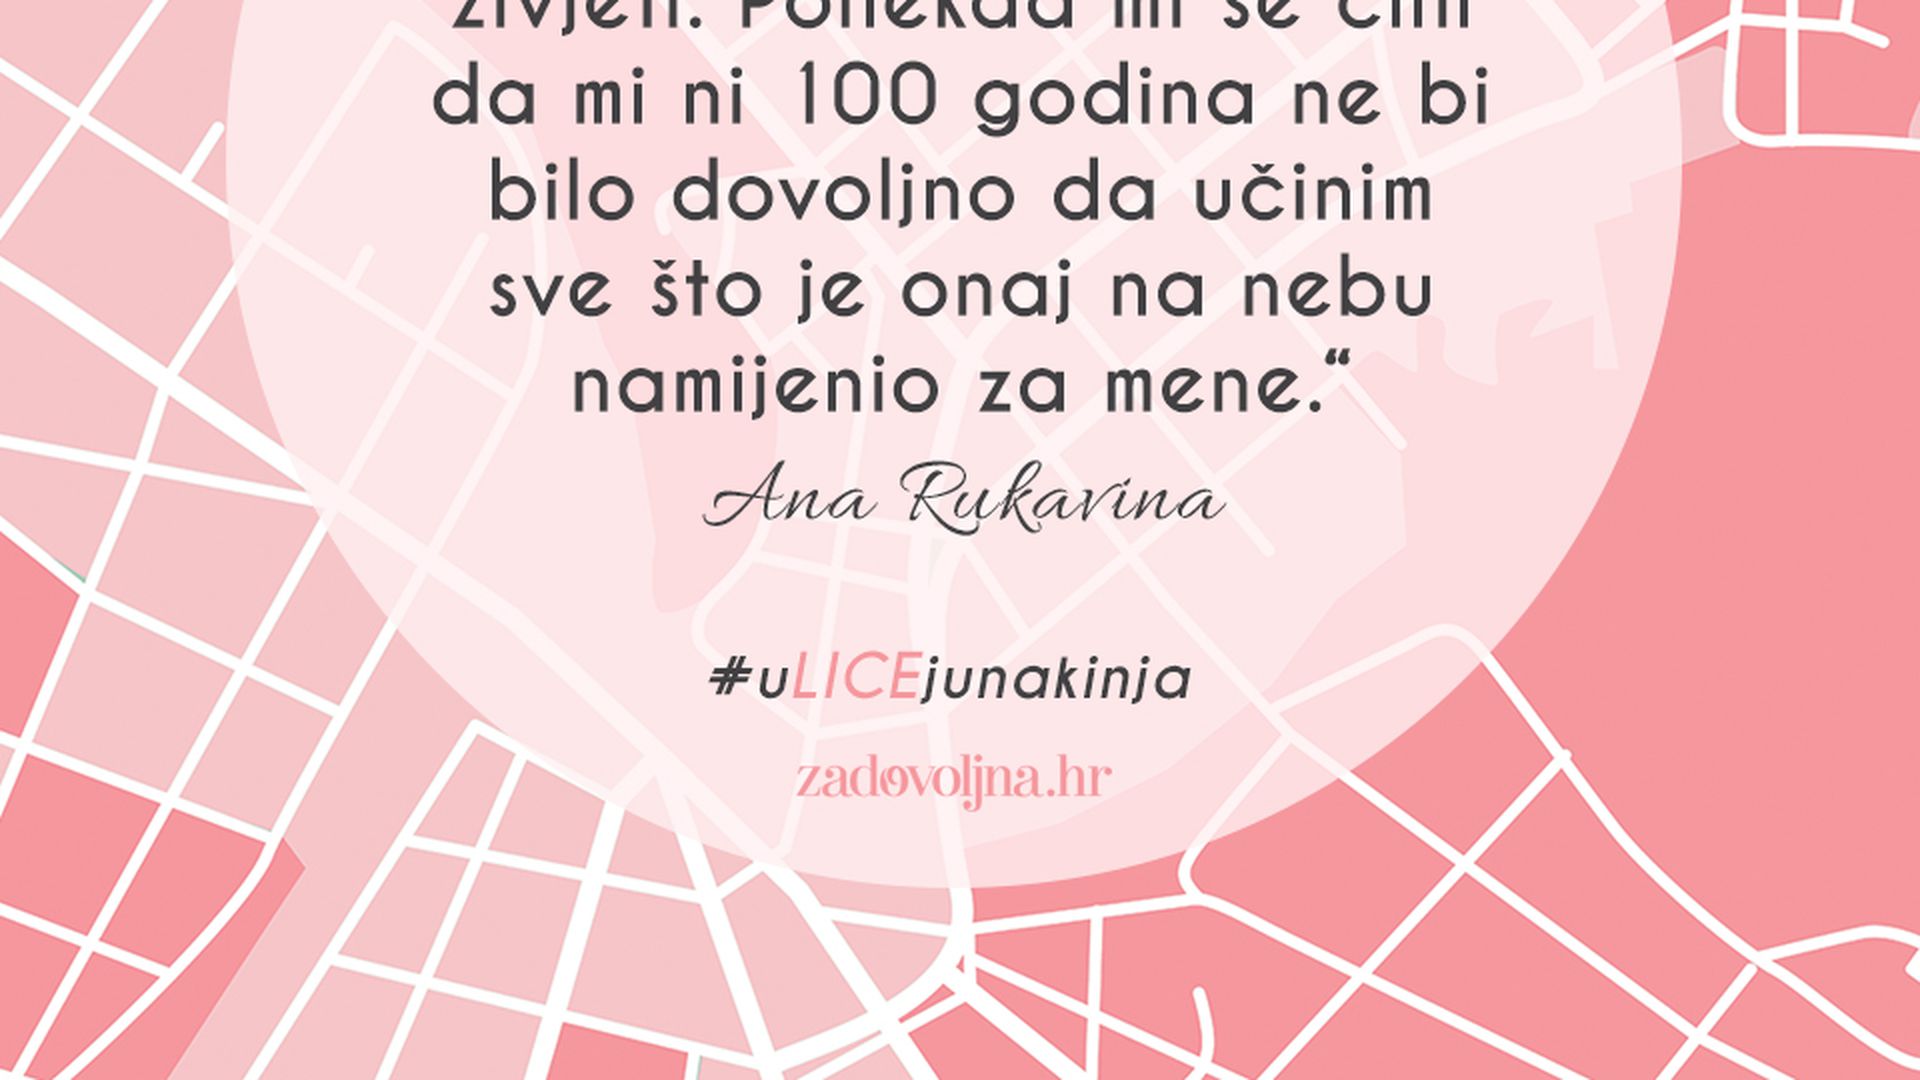 Ana Rukavina: Novinarka zbog čijeg je pisma do danas spašeno 98 života